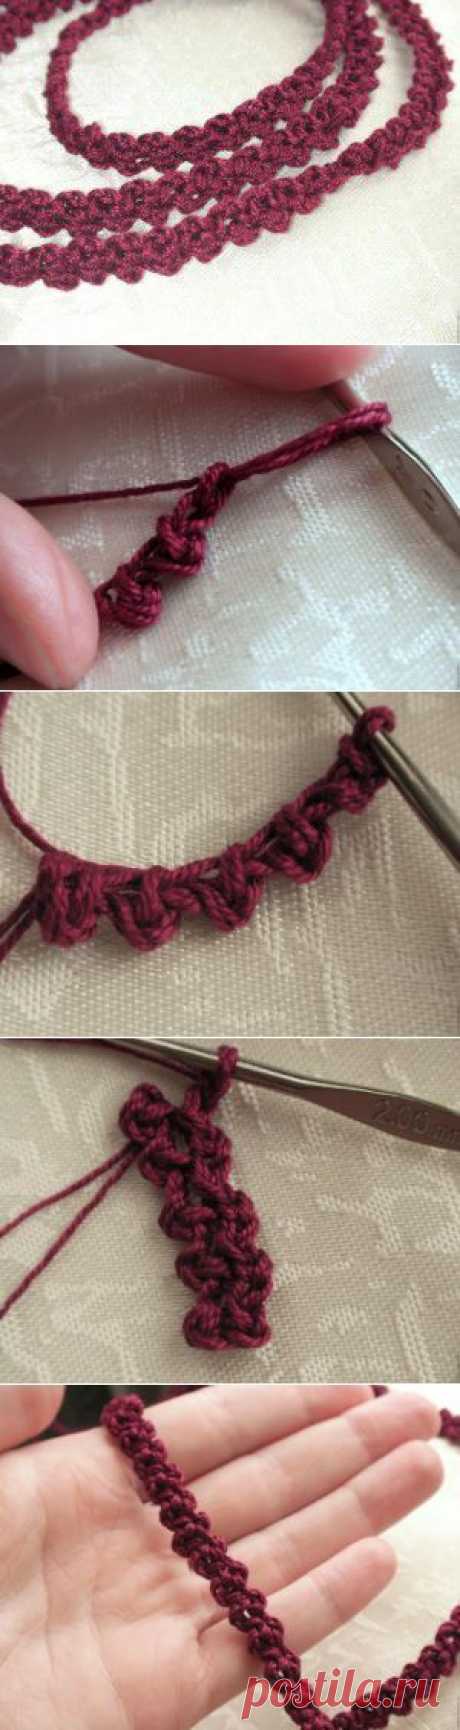 Как вязать шнур-ленту крючком - Вязание - Моя копилочка